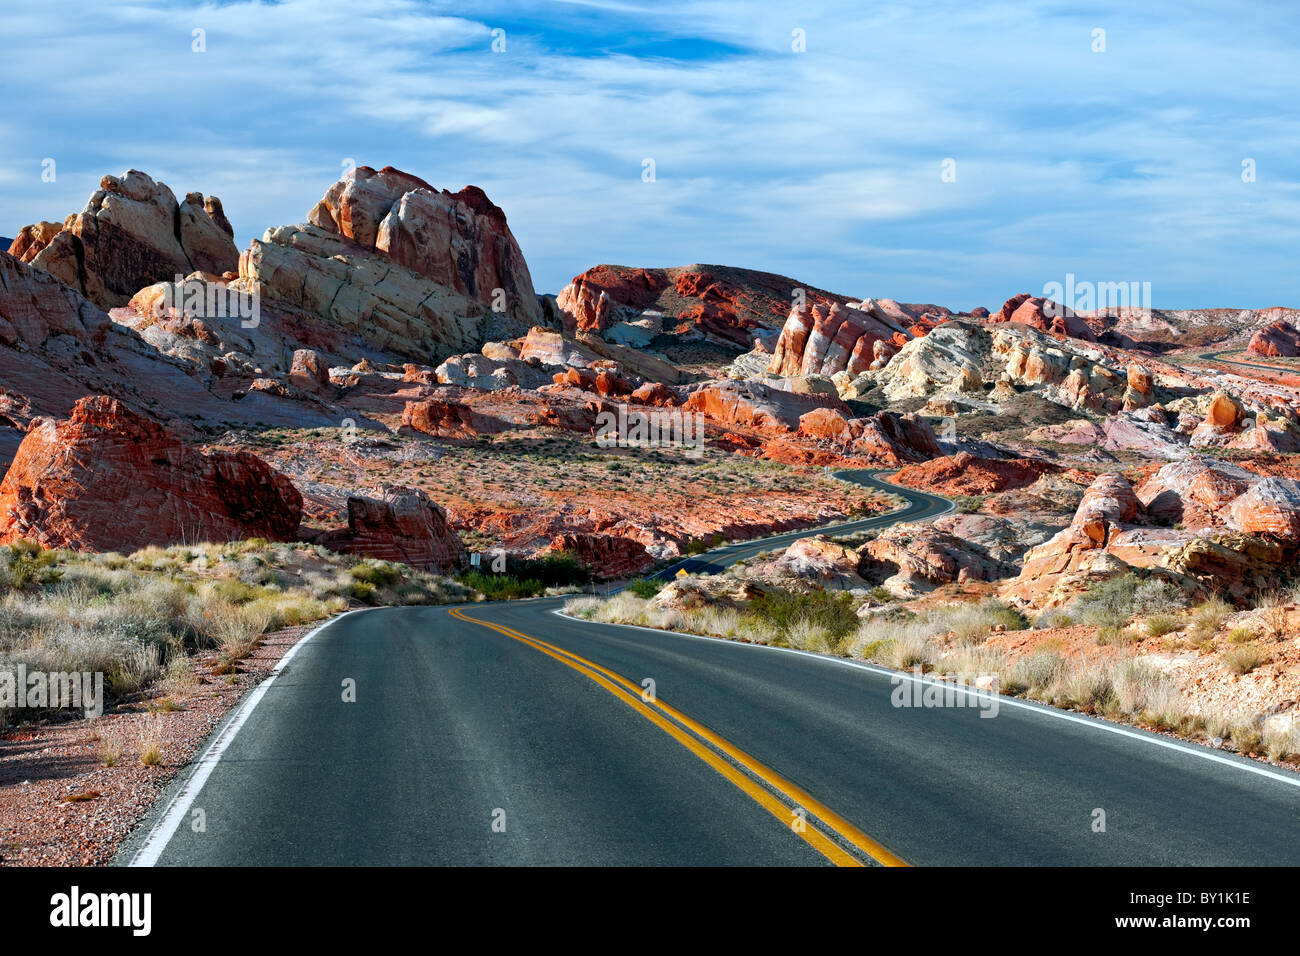 La pittoresque route 169 offre une vue exceptionnelle de la paysage de grès dans le Nevada's Valley of Fire State Park. Banque D'Images